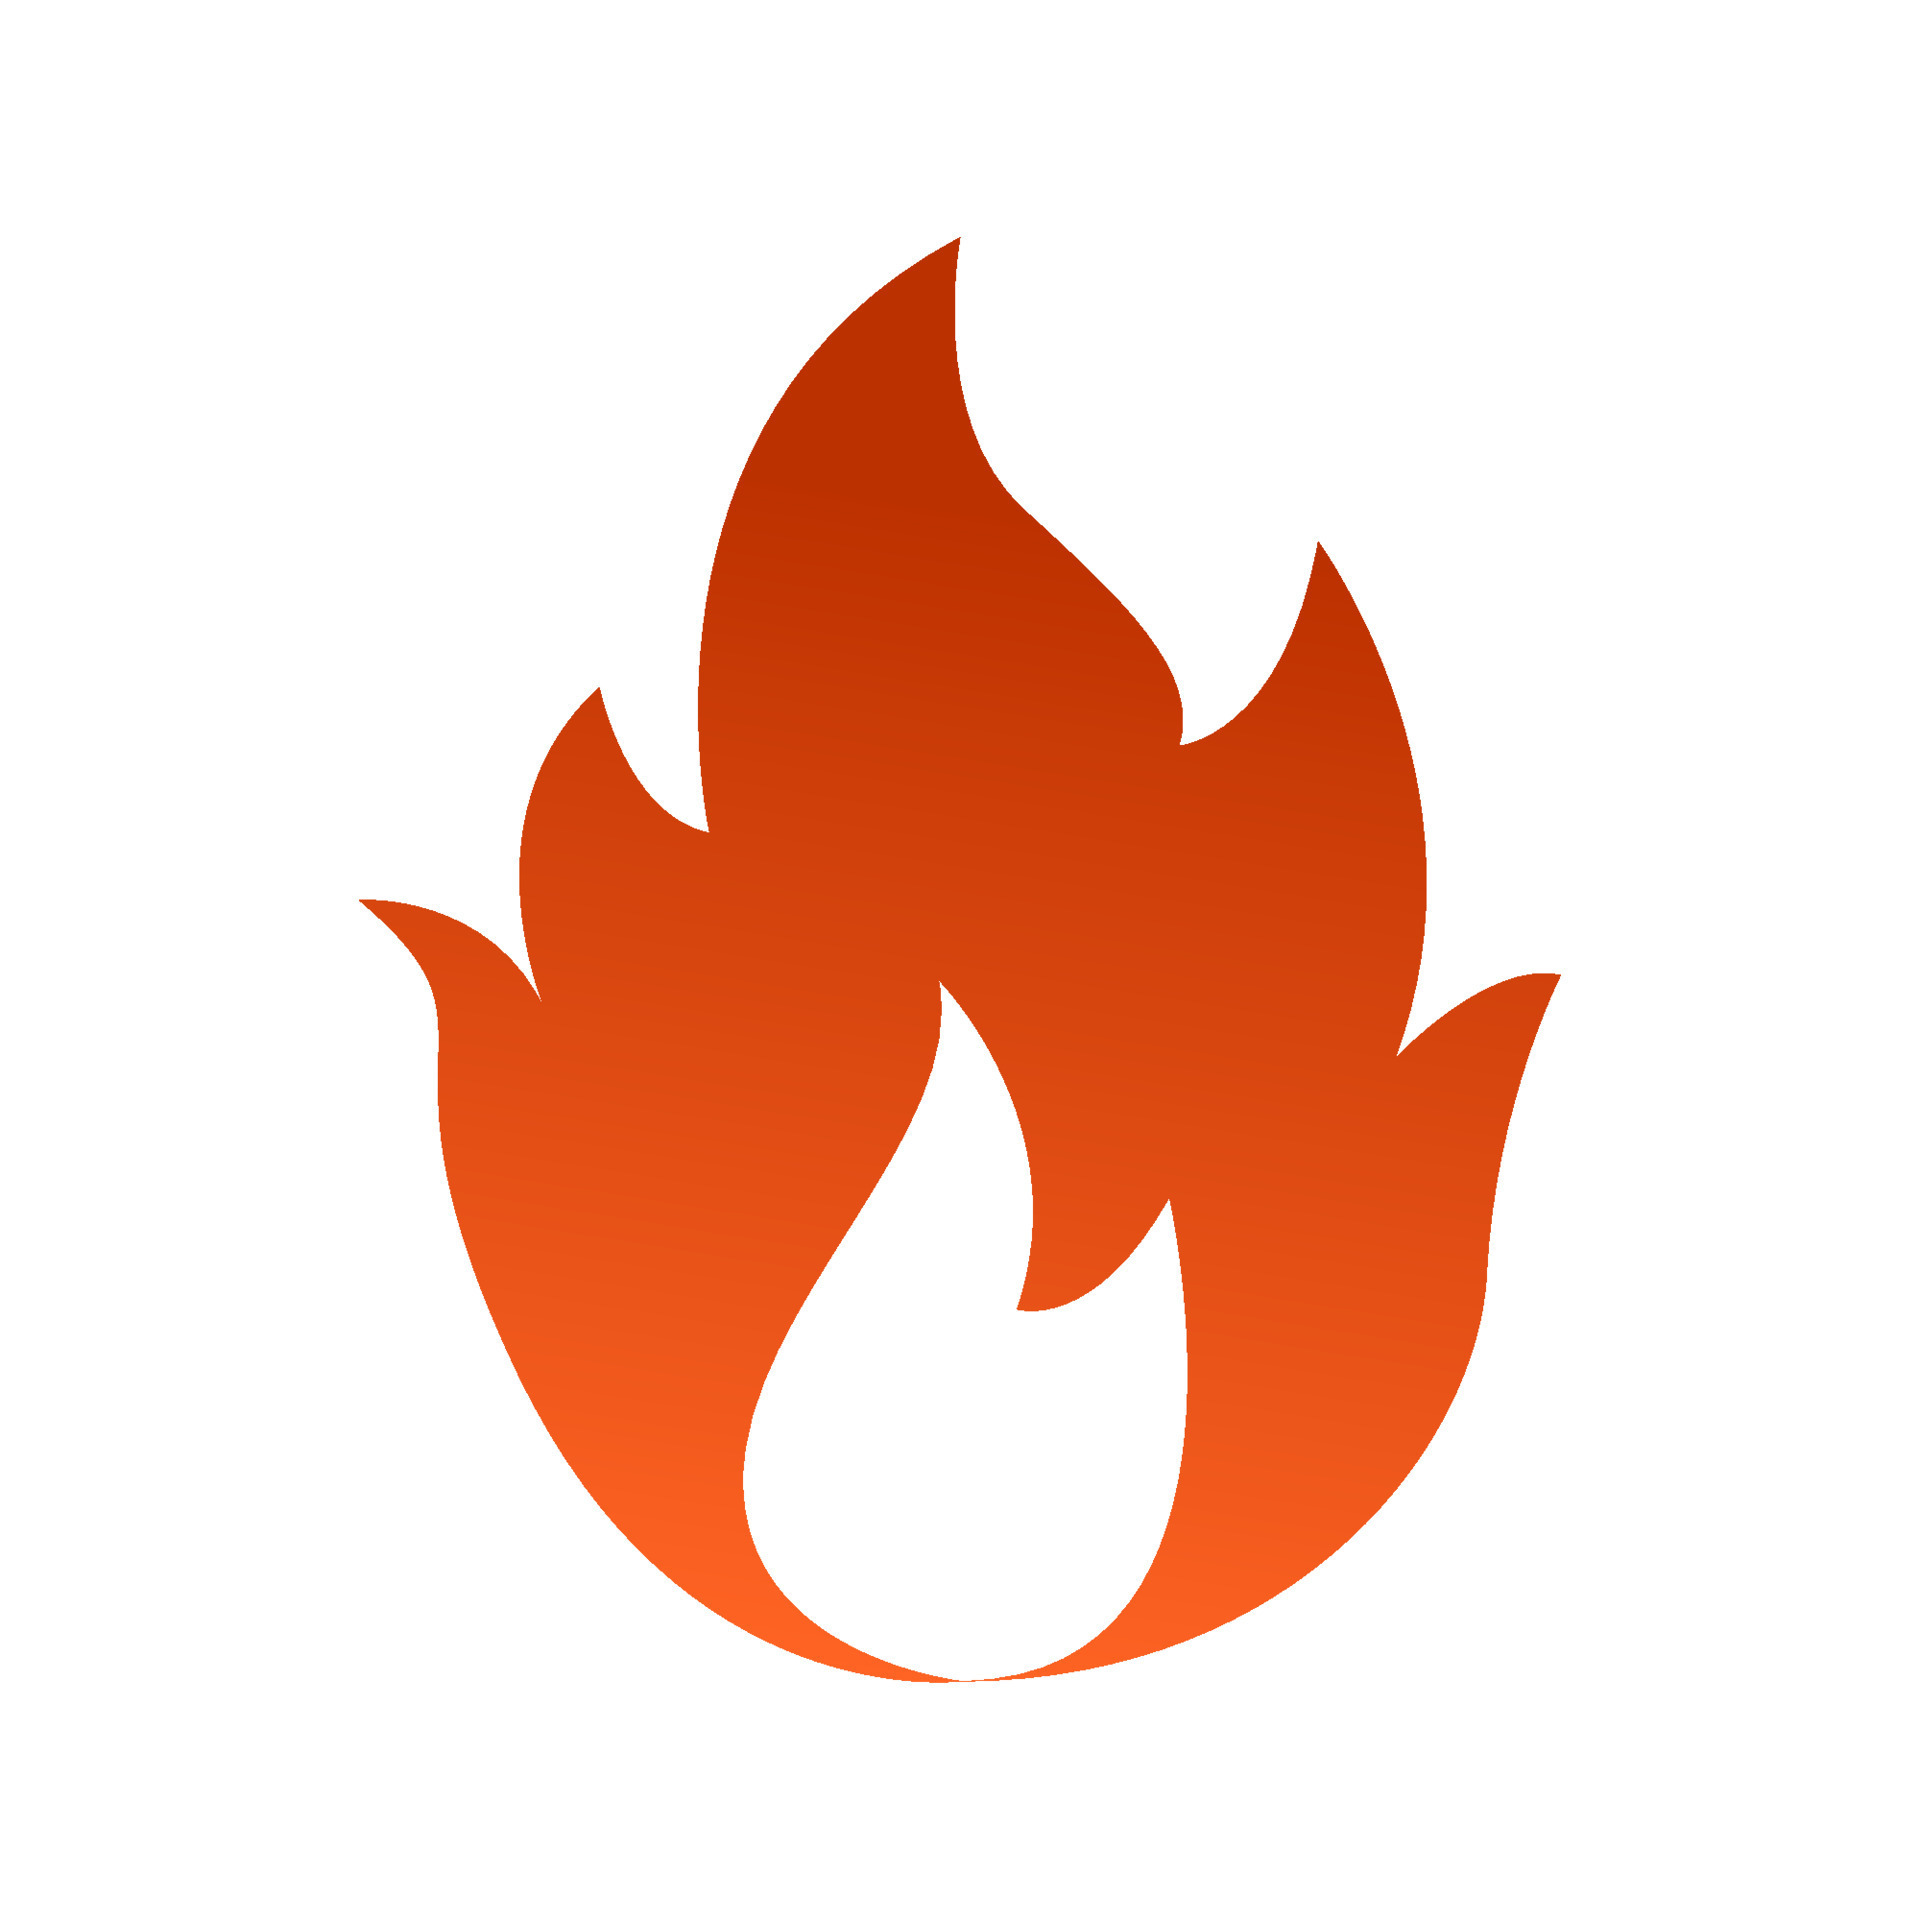 Fire Flames Symbols